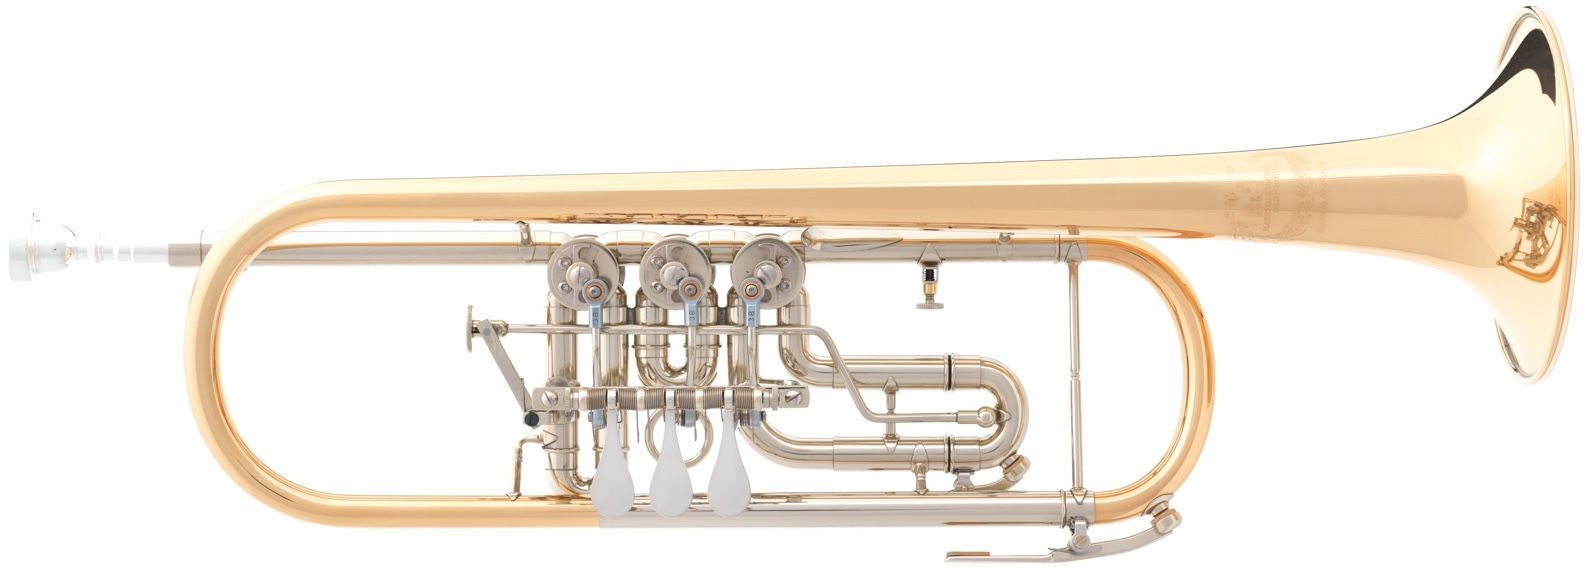 B S 3005 3 GT 1 0B Konzerttrompete, Bohrung 11,00mm, incl.Etui u. Pflegeset  - Onlineshop Musikhaus Markstein